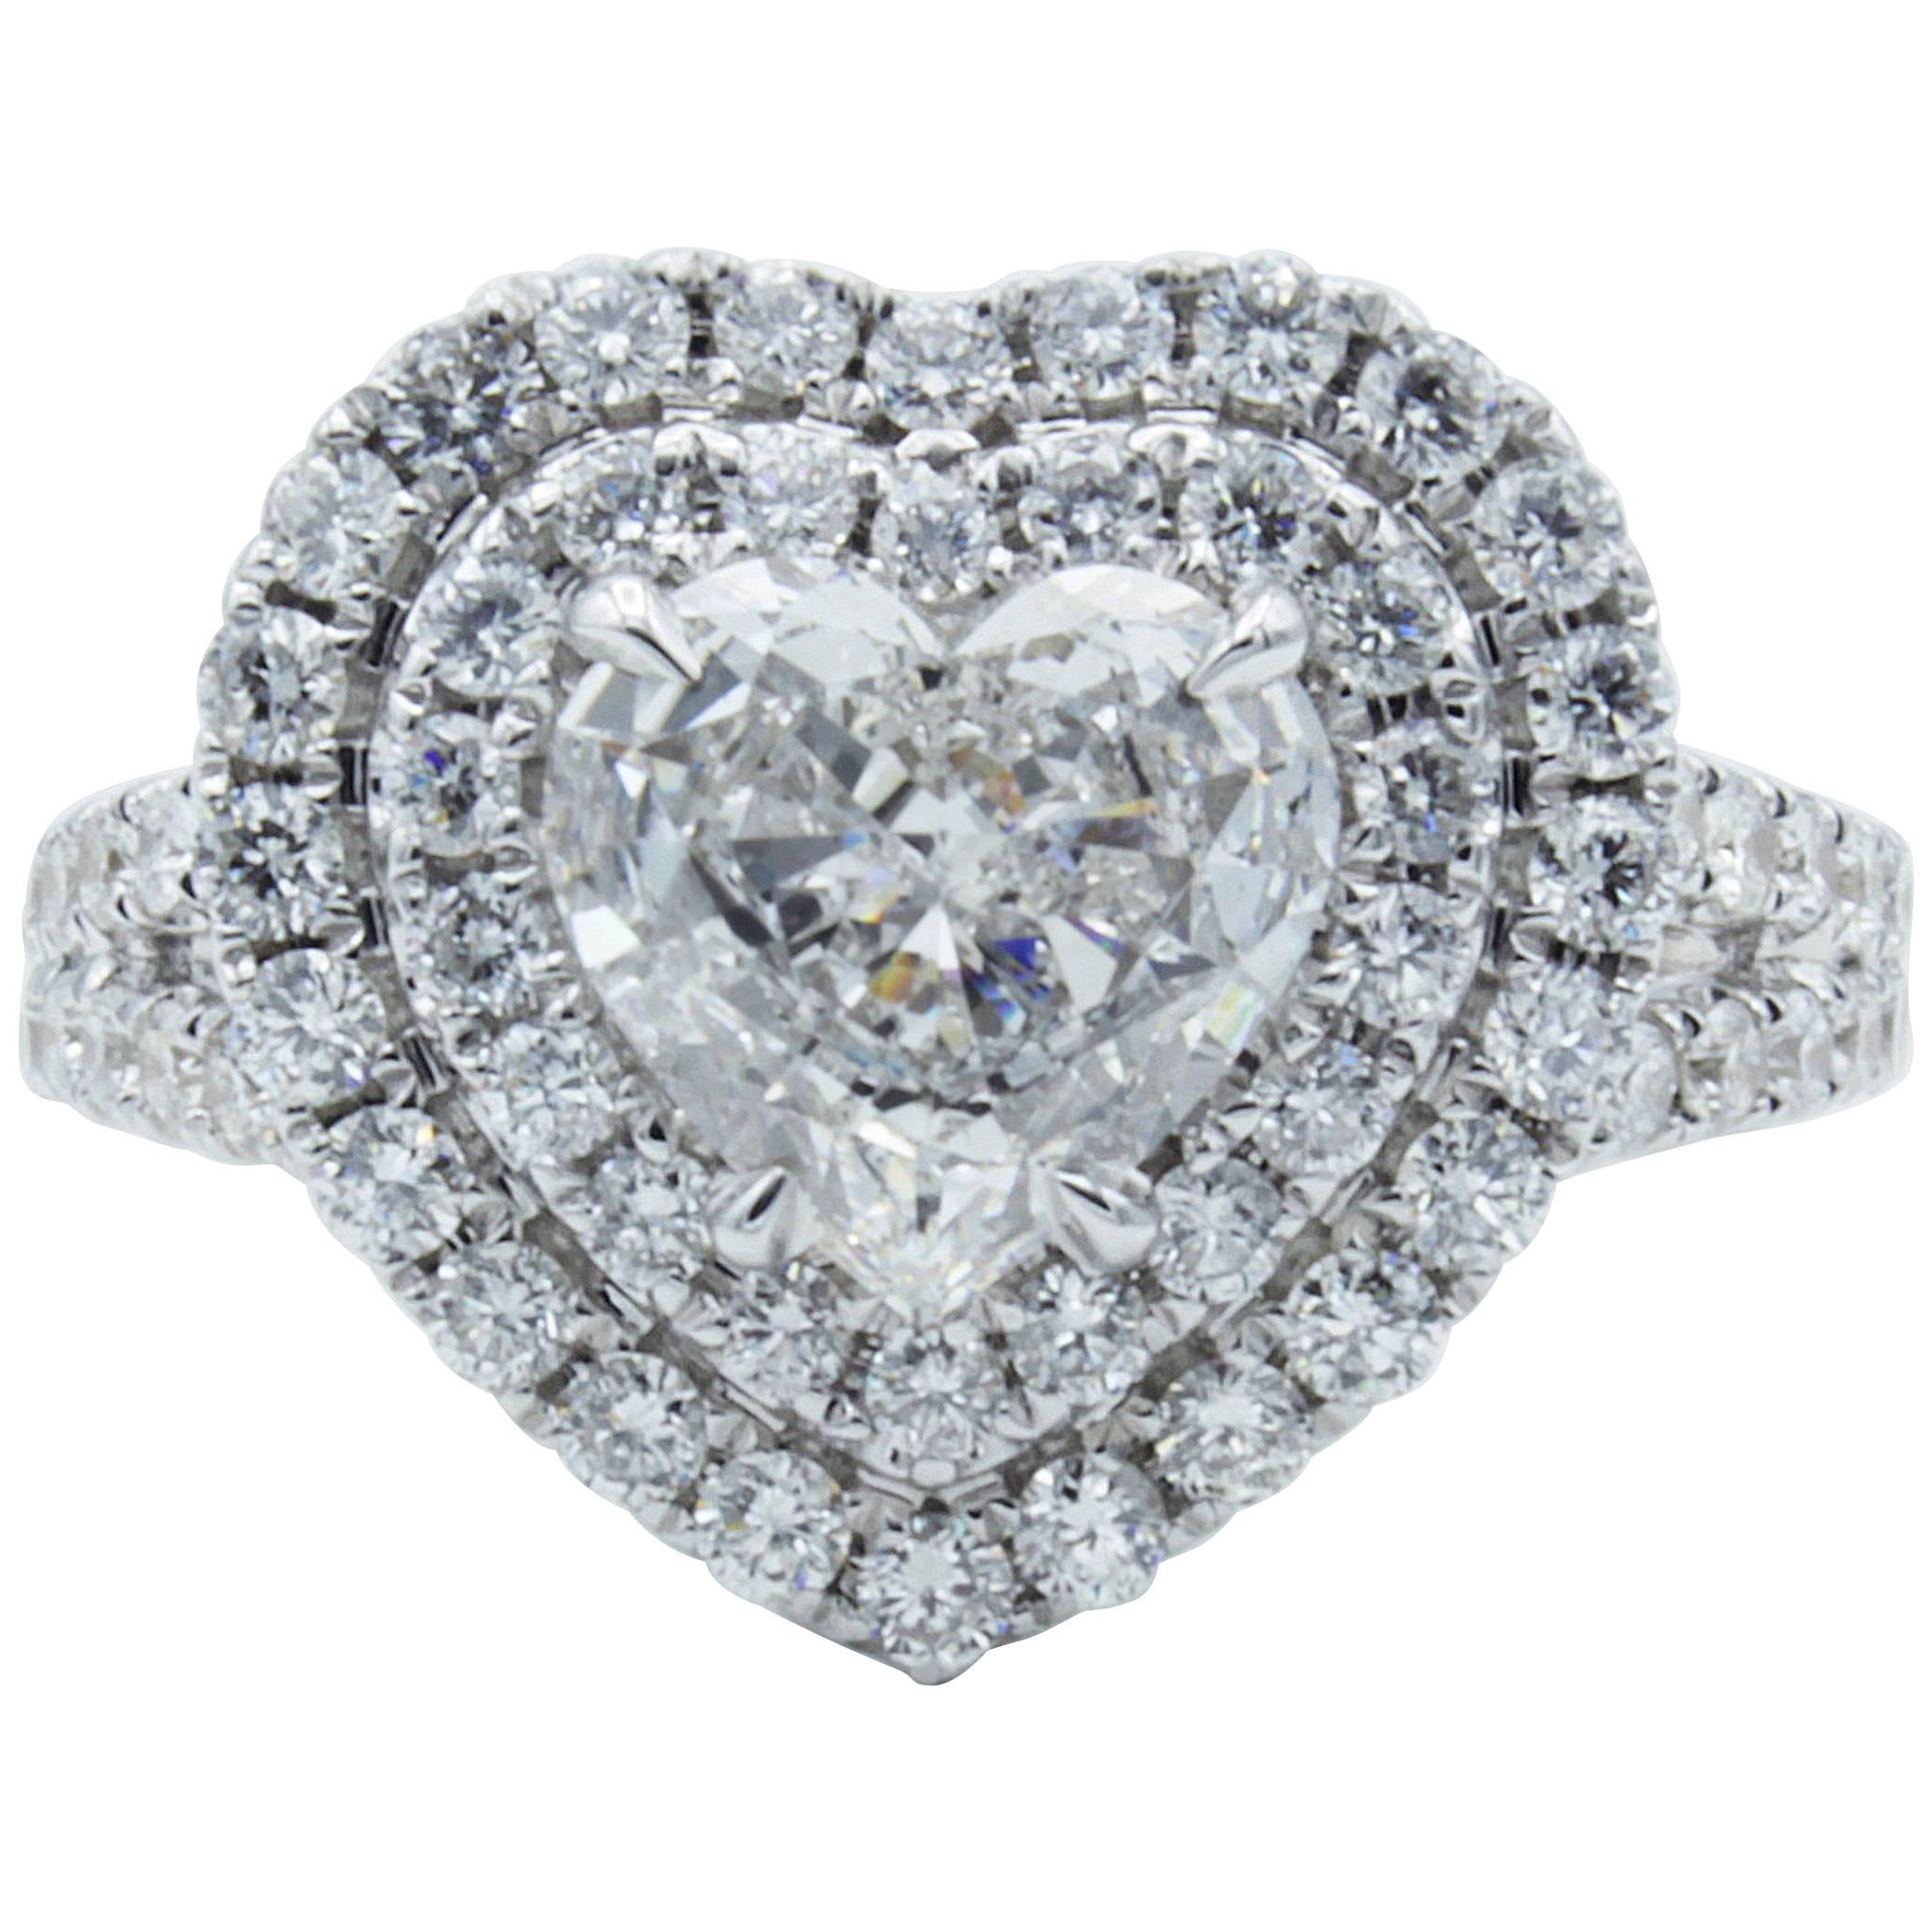 David Rosenberg 1.18 Carat Heart Shaped E/VS2 Diamond Engagement Ring